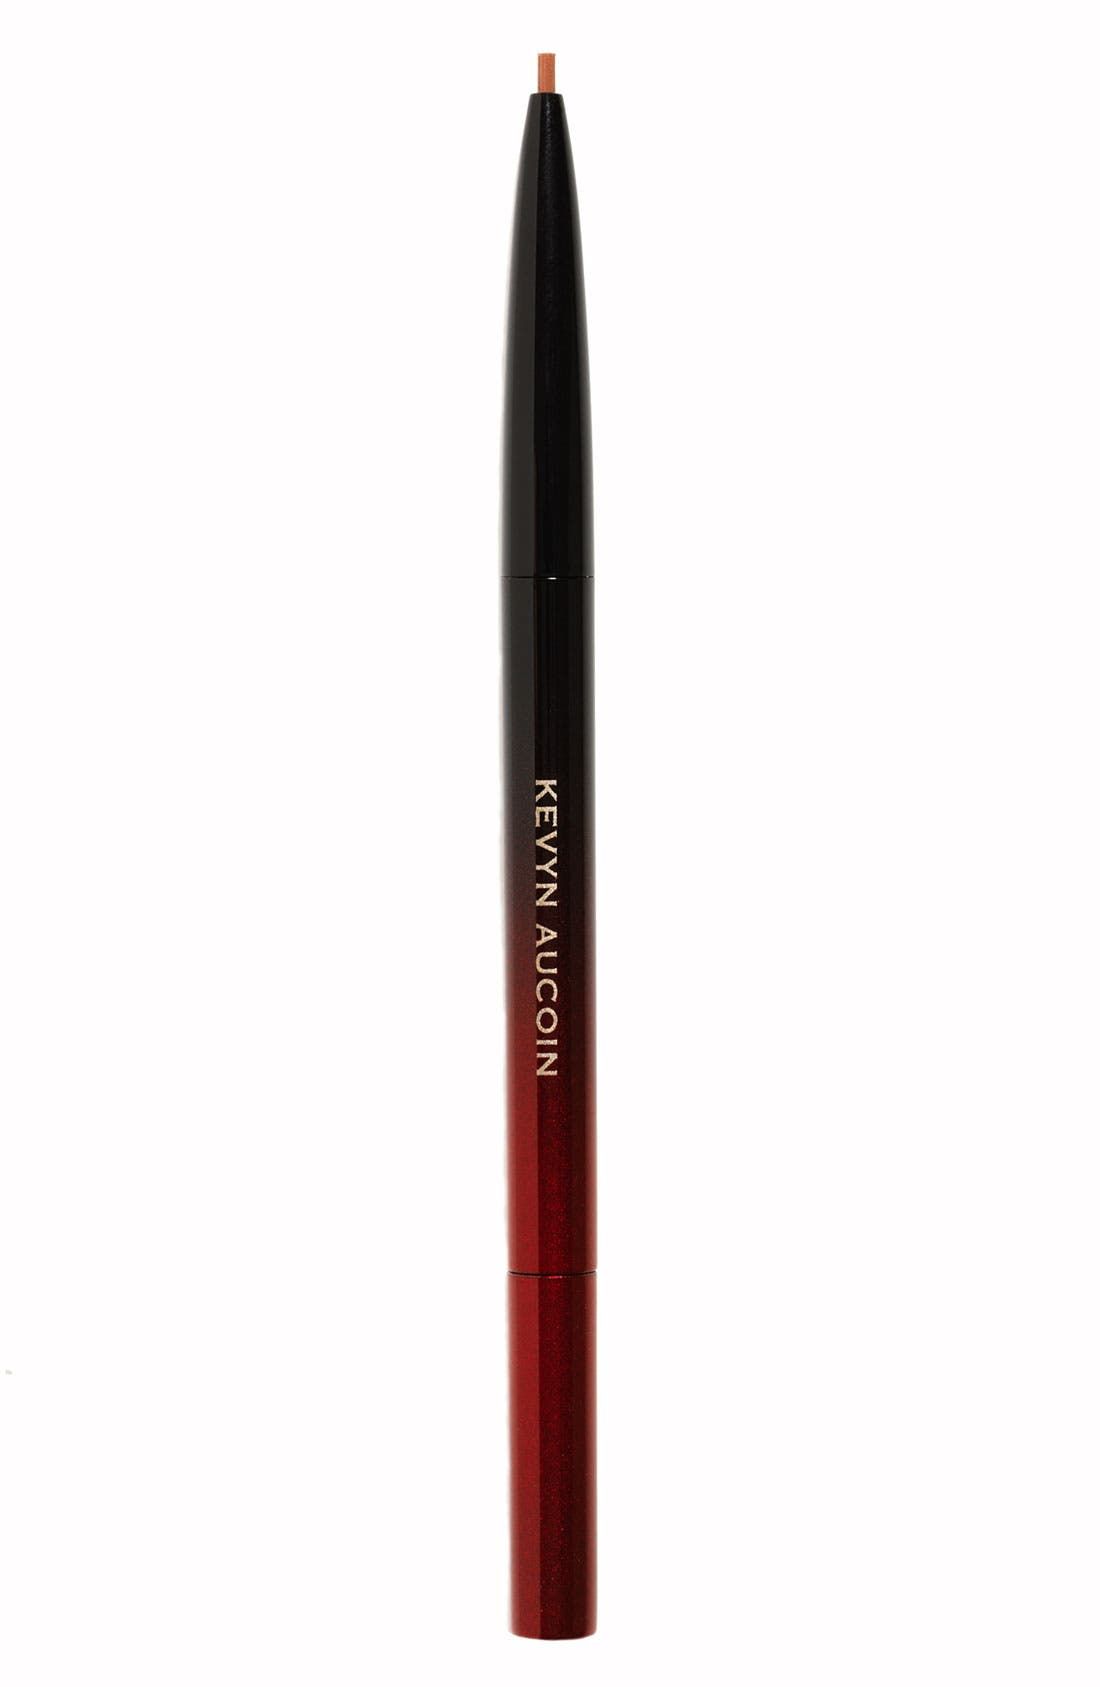 The Precision Brow Pencil in Dark Brunette